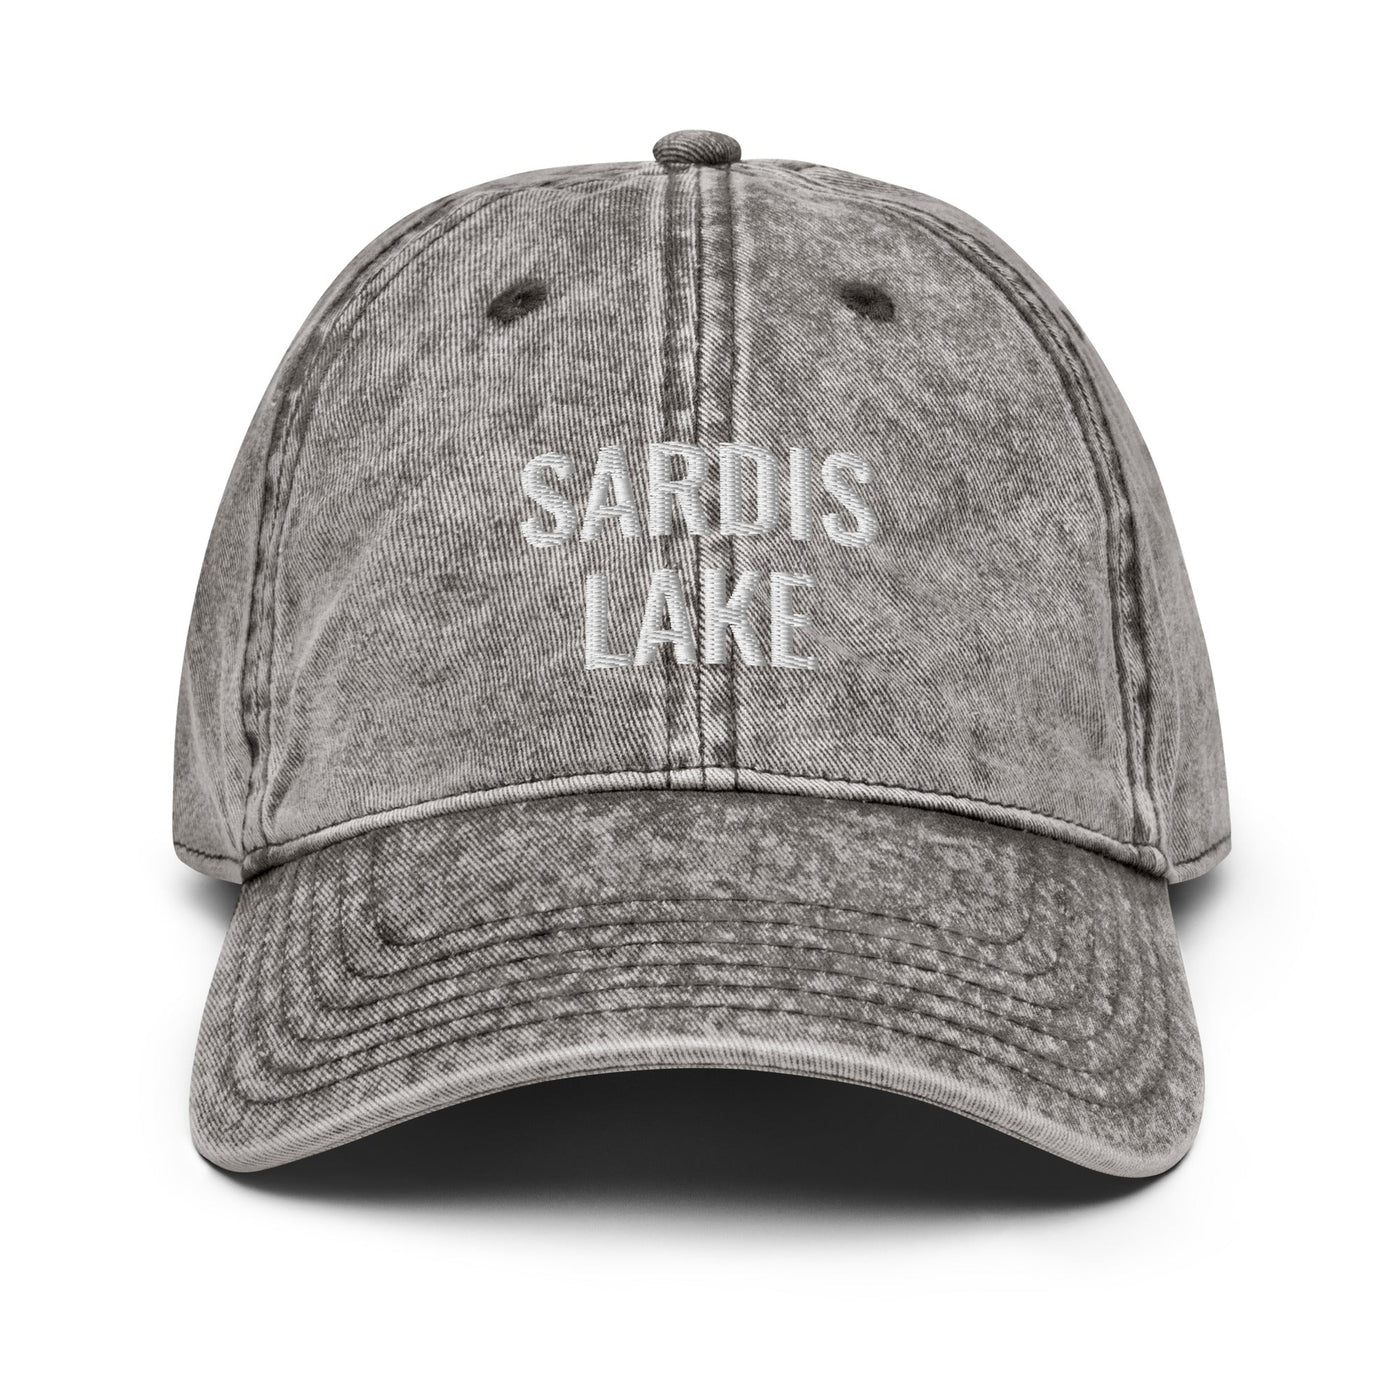 Sardis Lake Hat - Ezra's Clothing